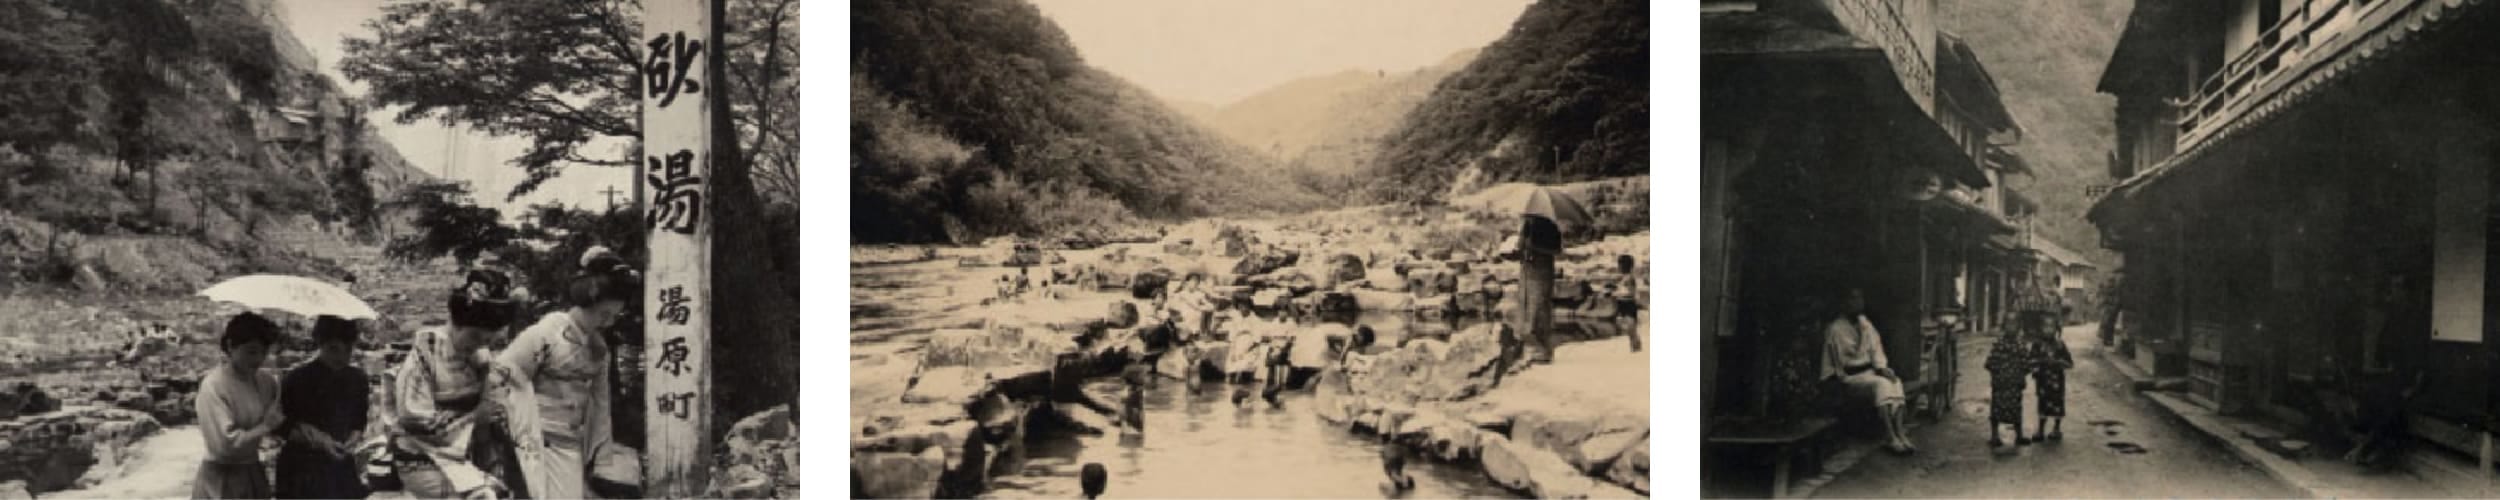 湯原温泉の歴史